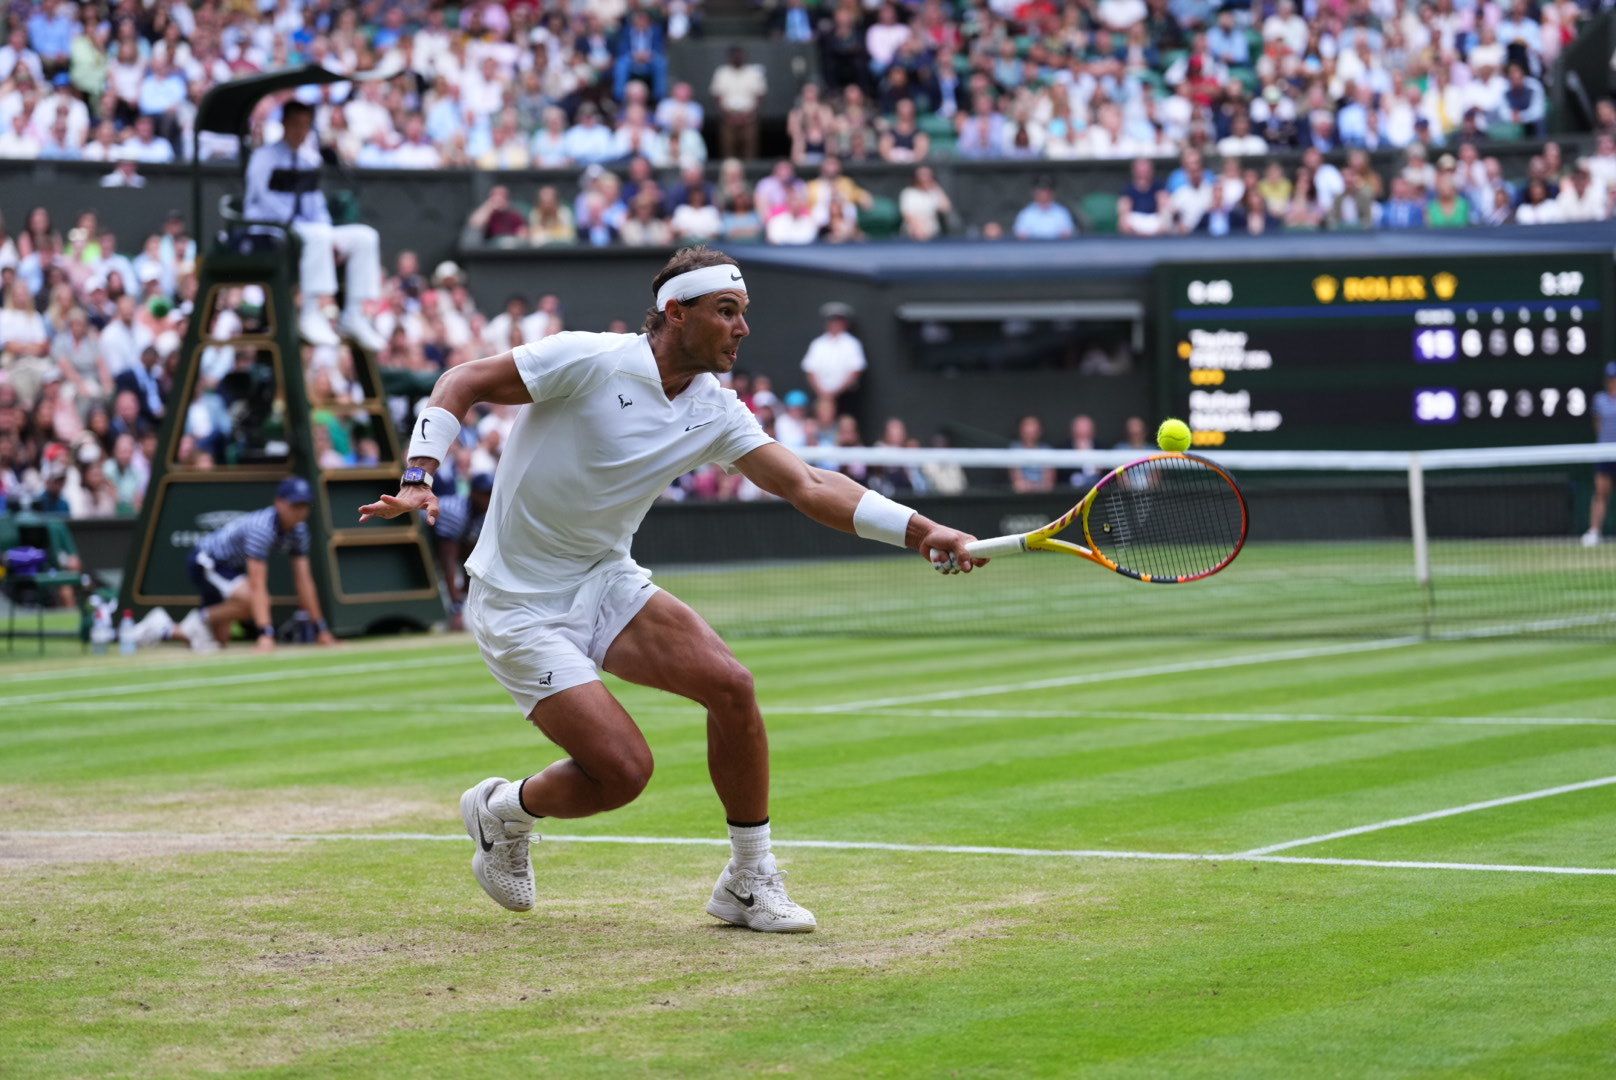 ‘Brilliant’: Sachin Tendulkar congratulates Rafael Nadal after Wimbledon comeback win